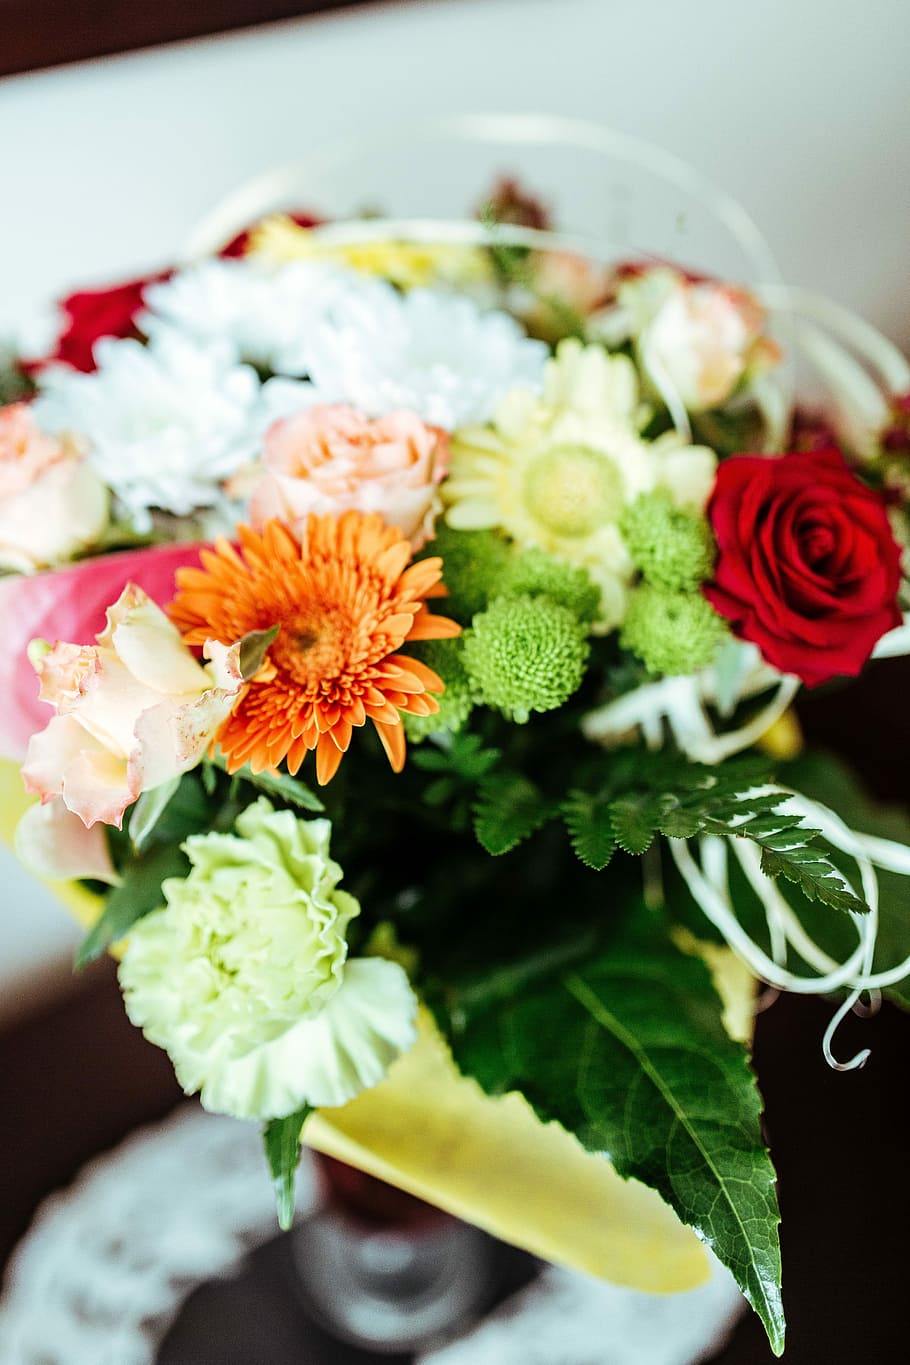 配置, 美しい, 花束, 花, 植物, きれい, アレンジメント, 結婚式, バラ-花, 装飾